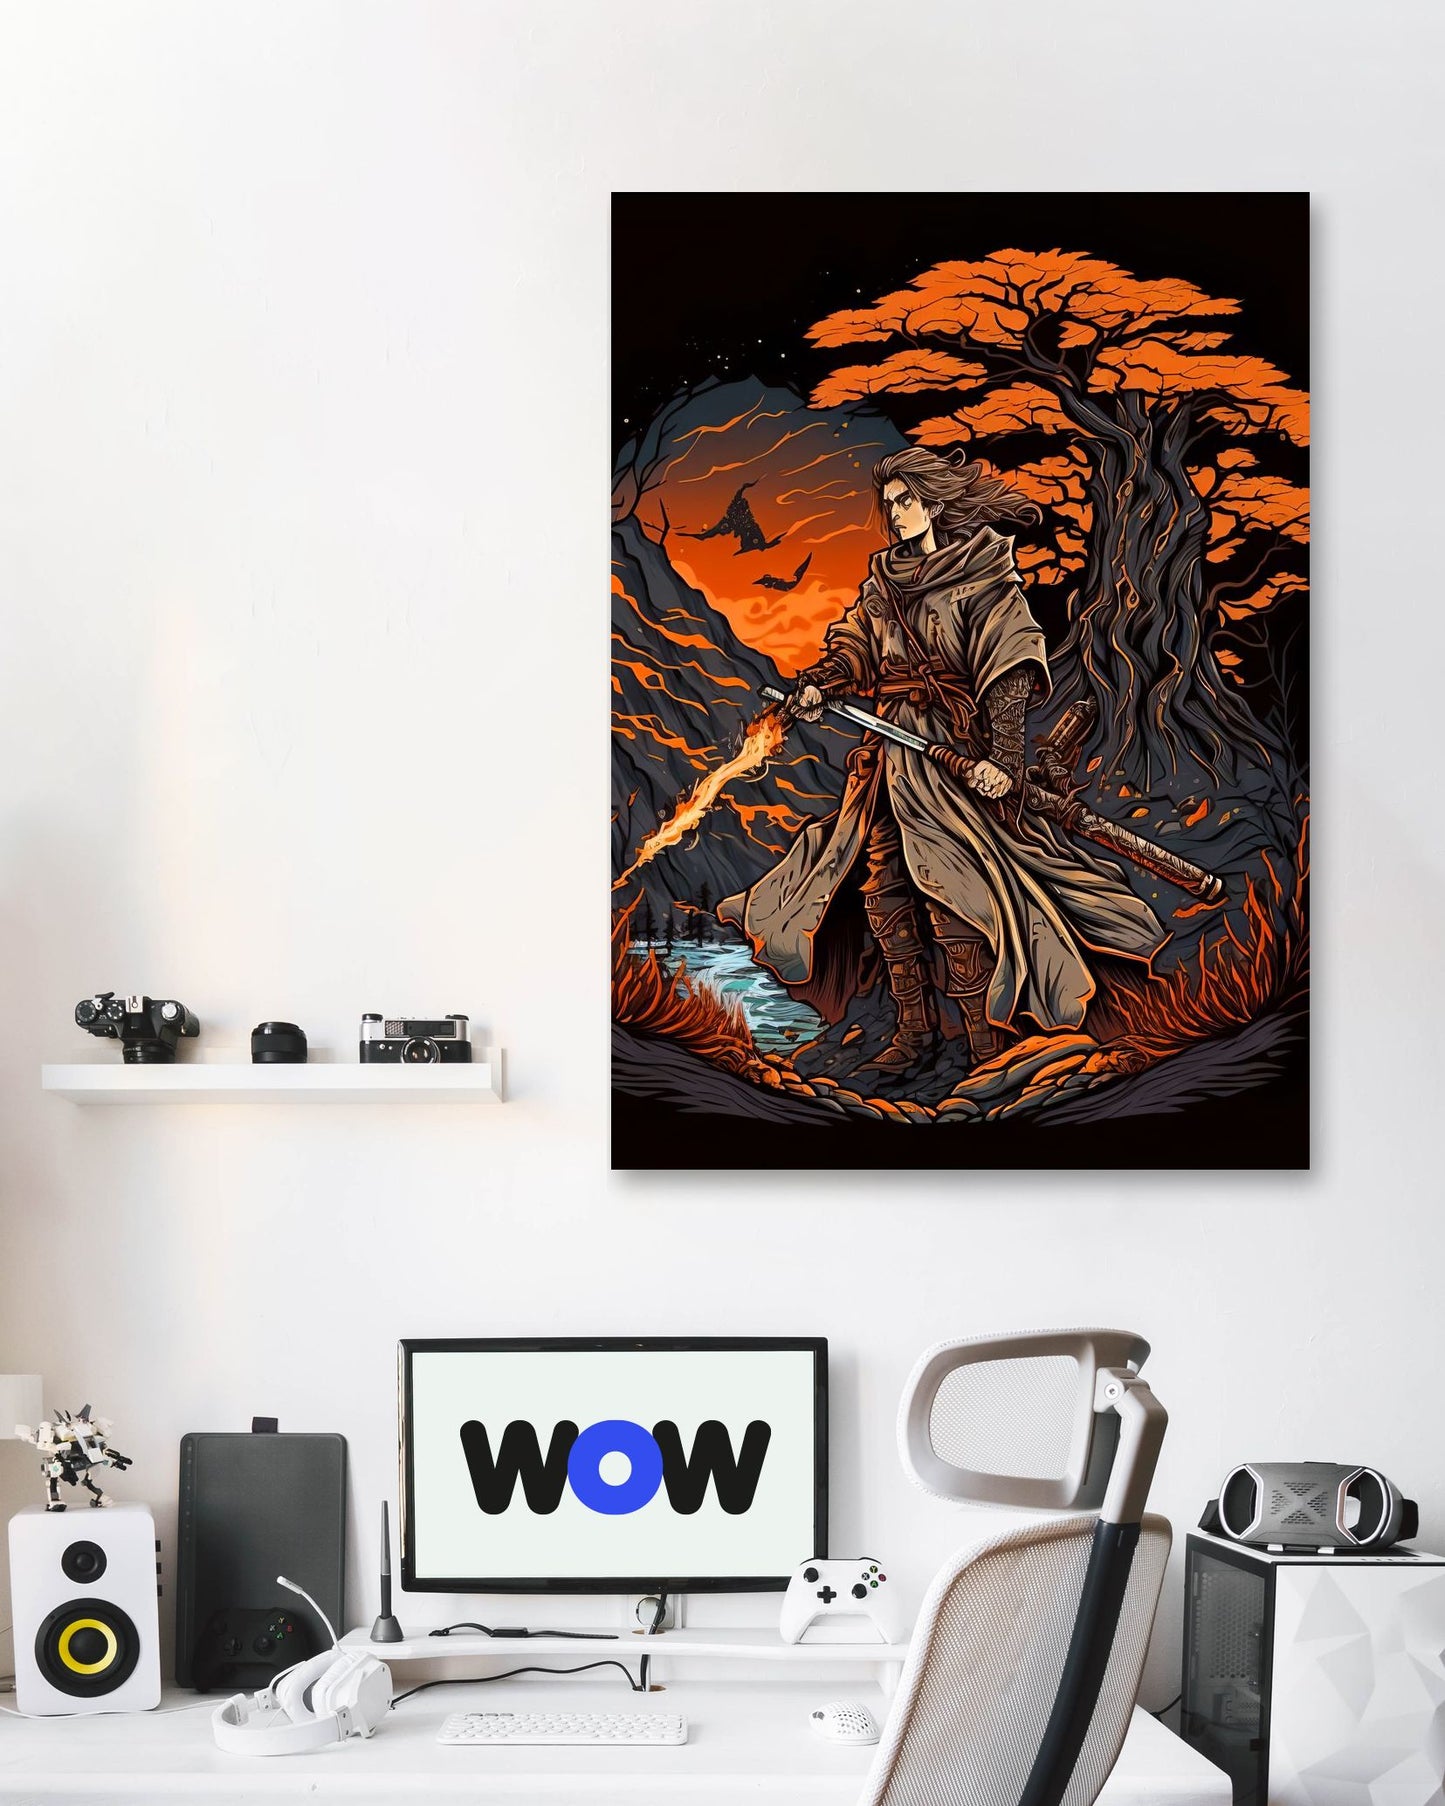 World War Samurai 1 - @Better_Creative